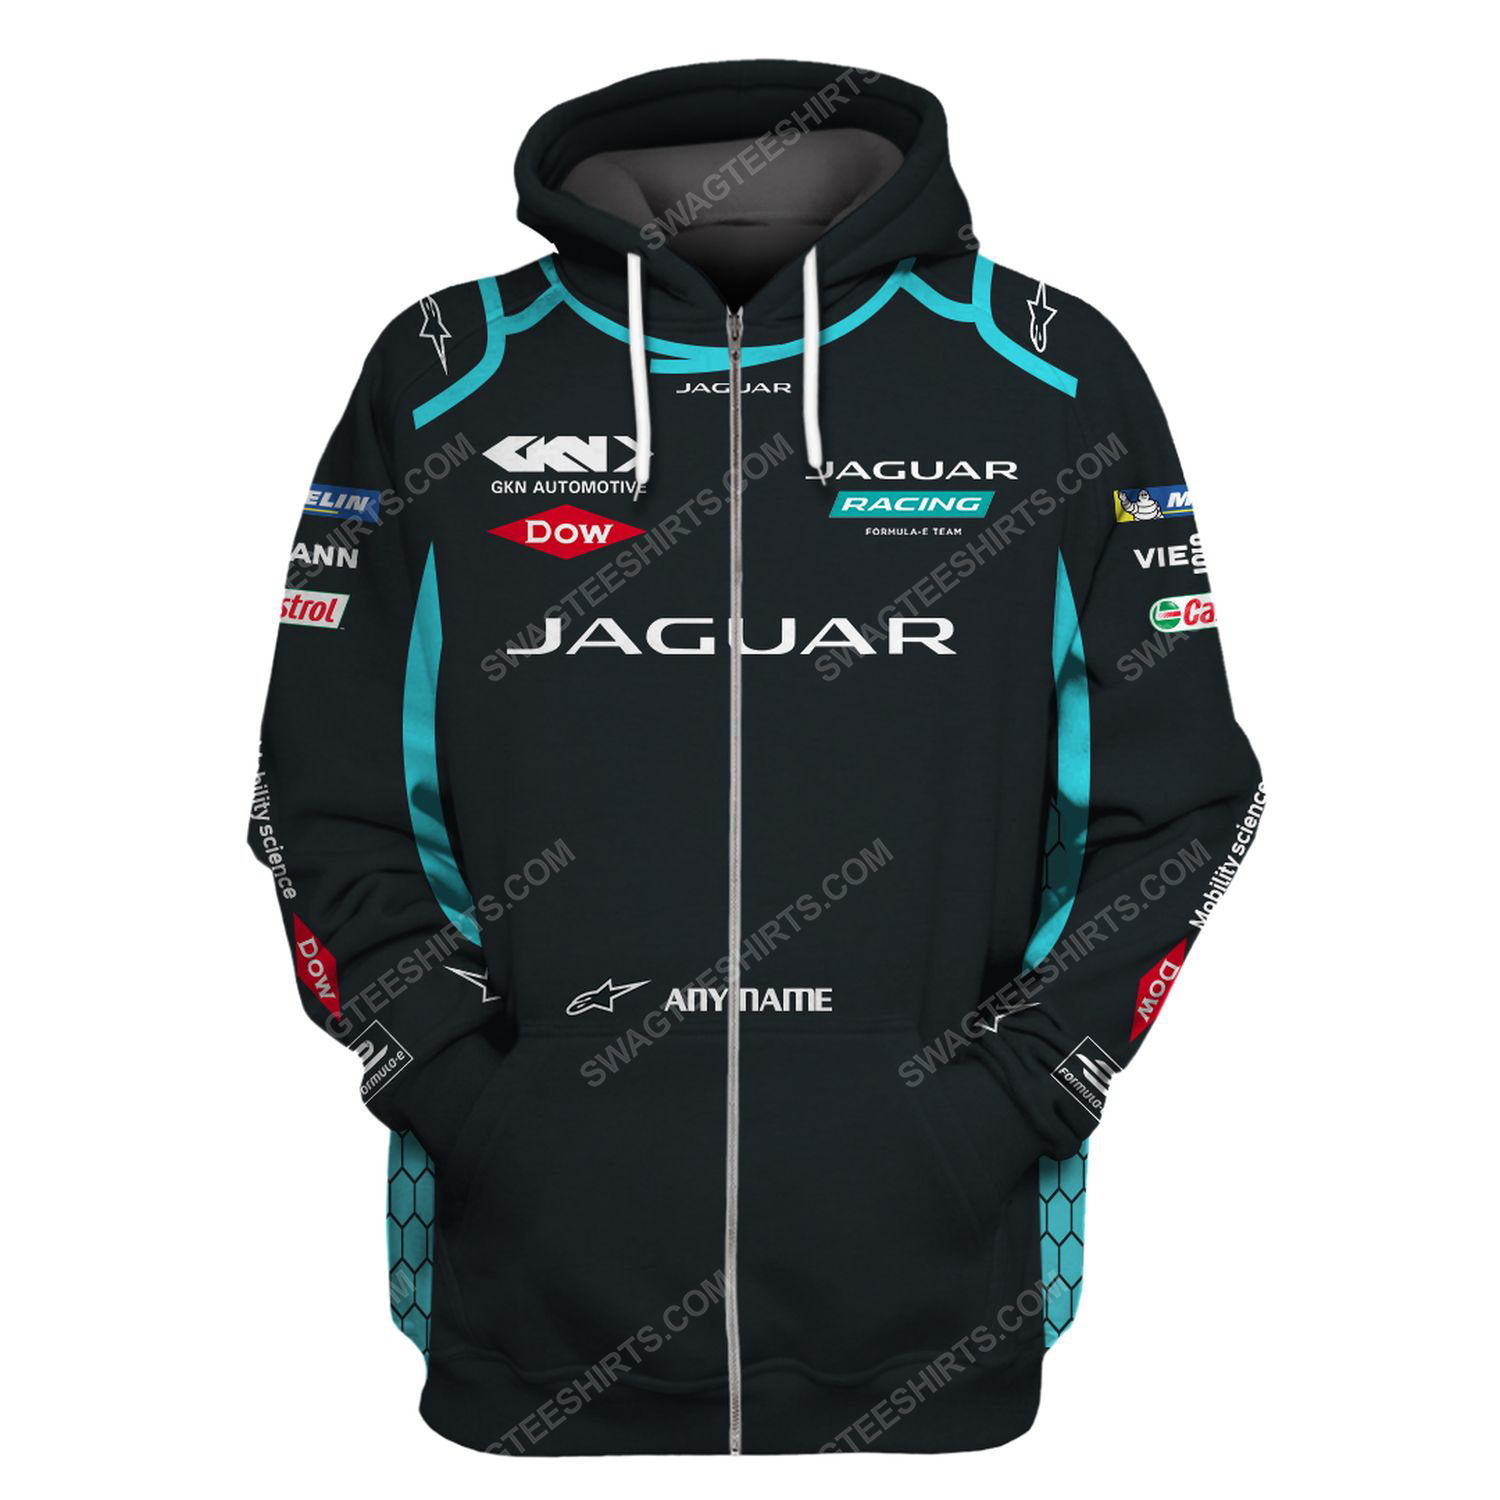 Custom jaguar racing team motorsport full printing zip hoodie